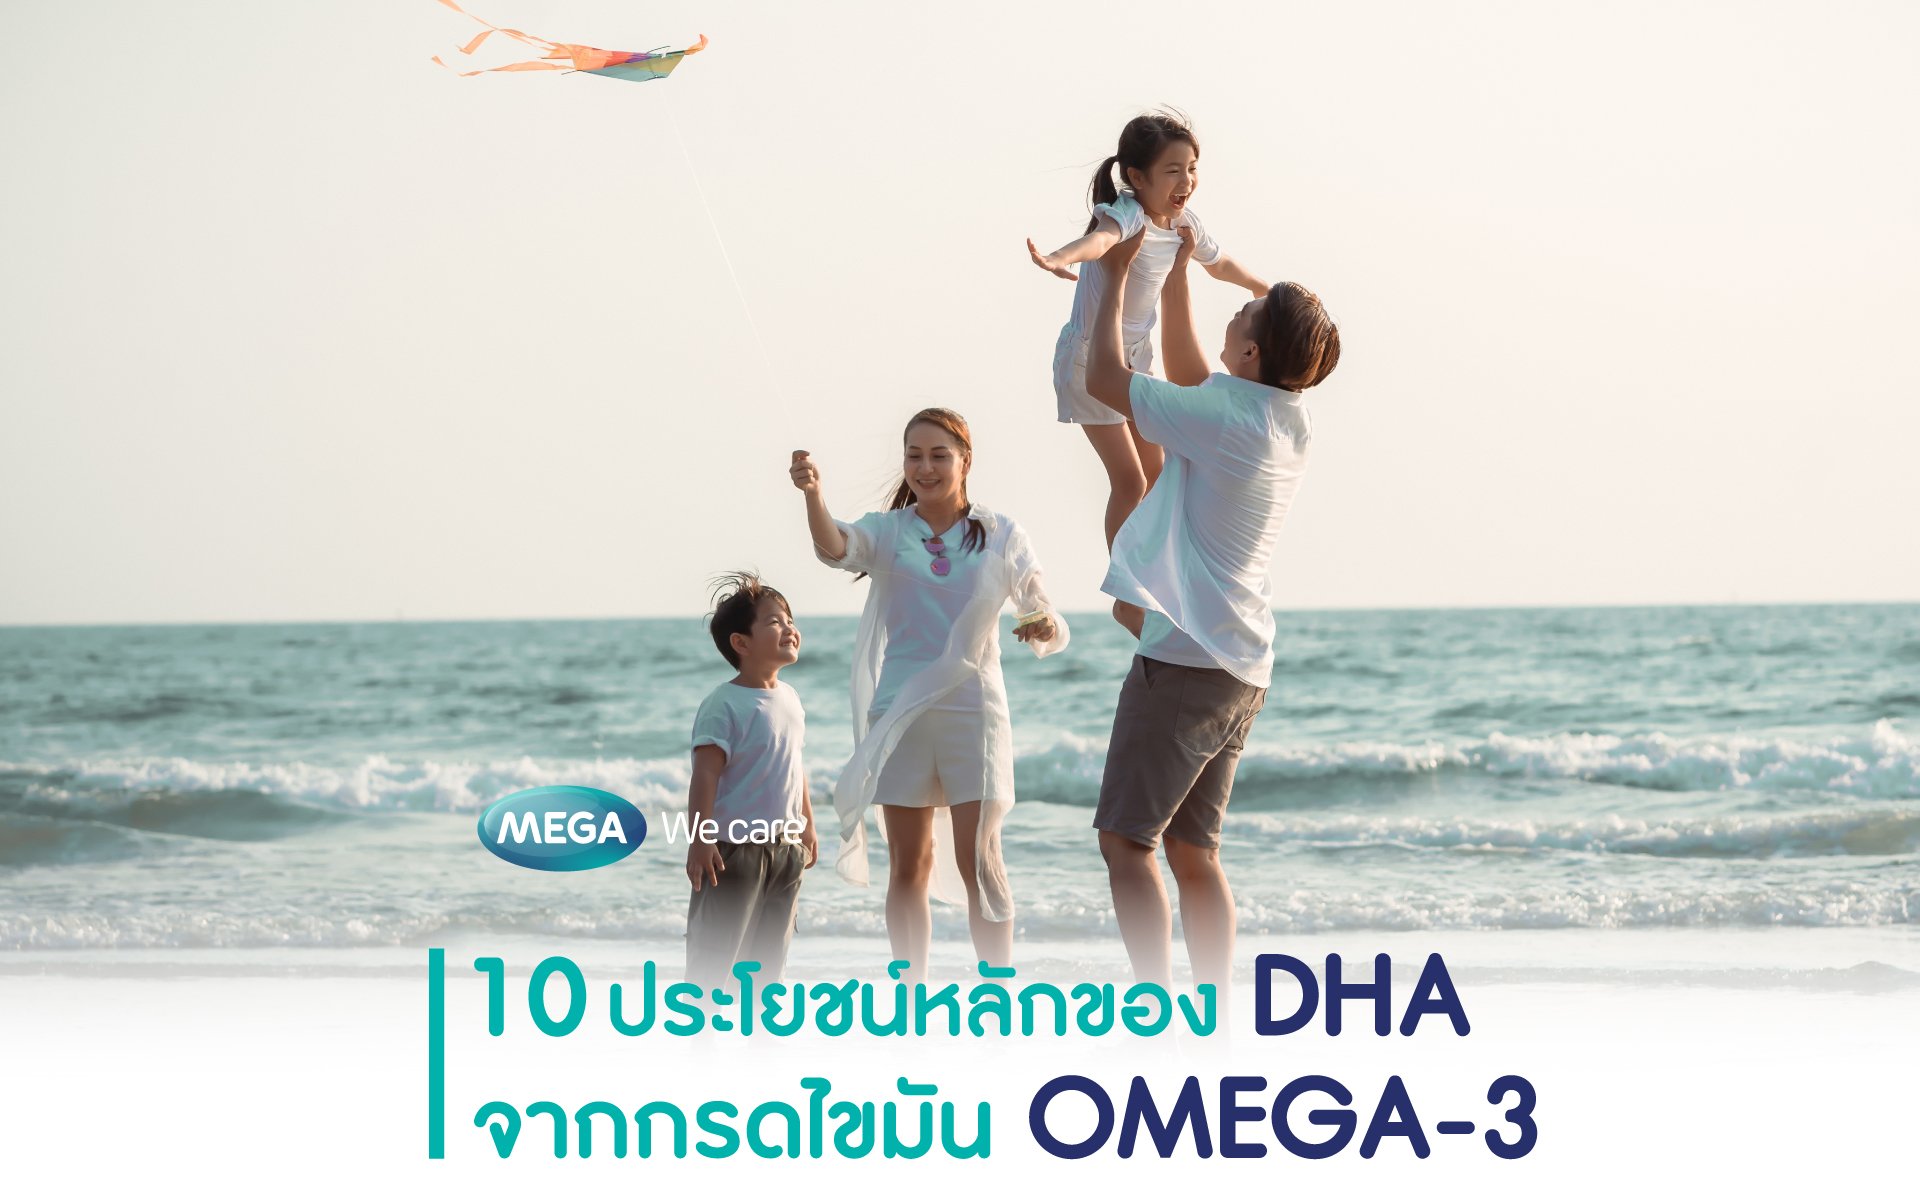 DHA ในกรดไขมัน OMEGA-3 กับประโยชน์ต่อสุขภาพของคนทุกวัย